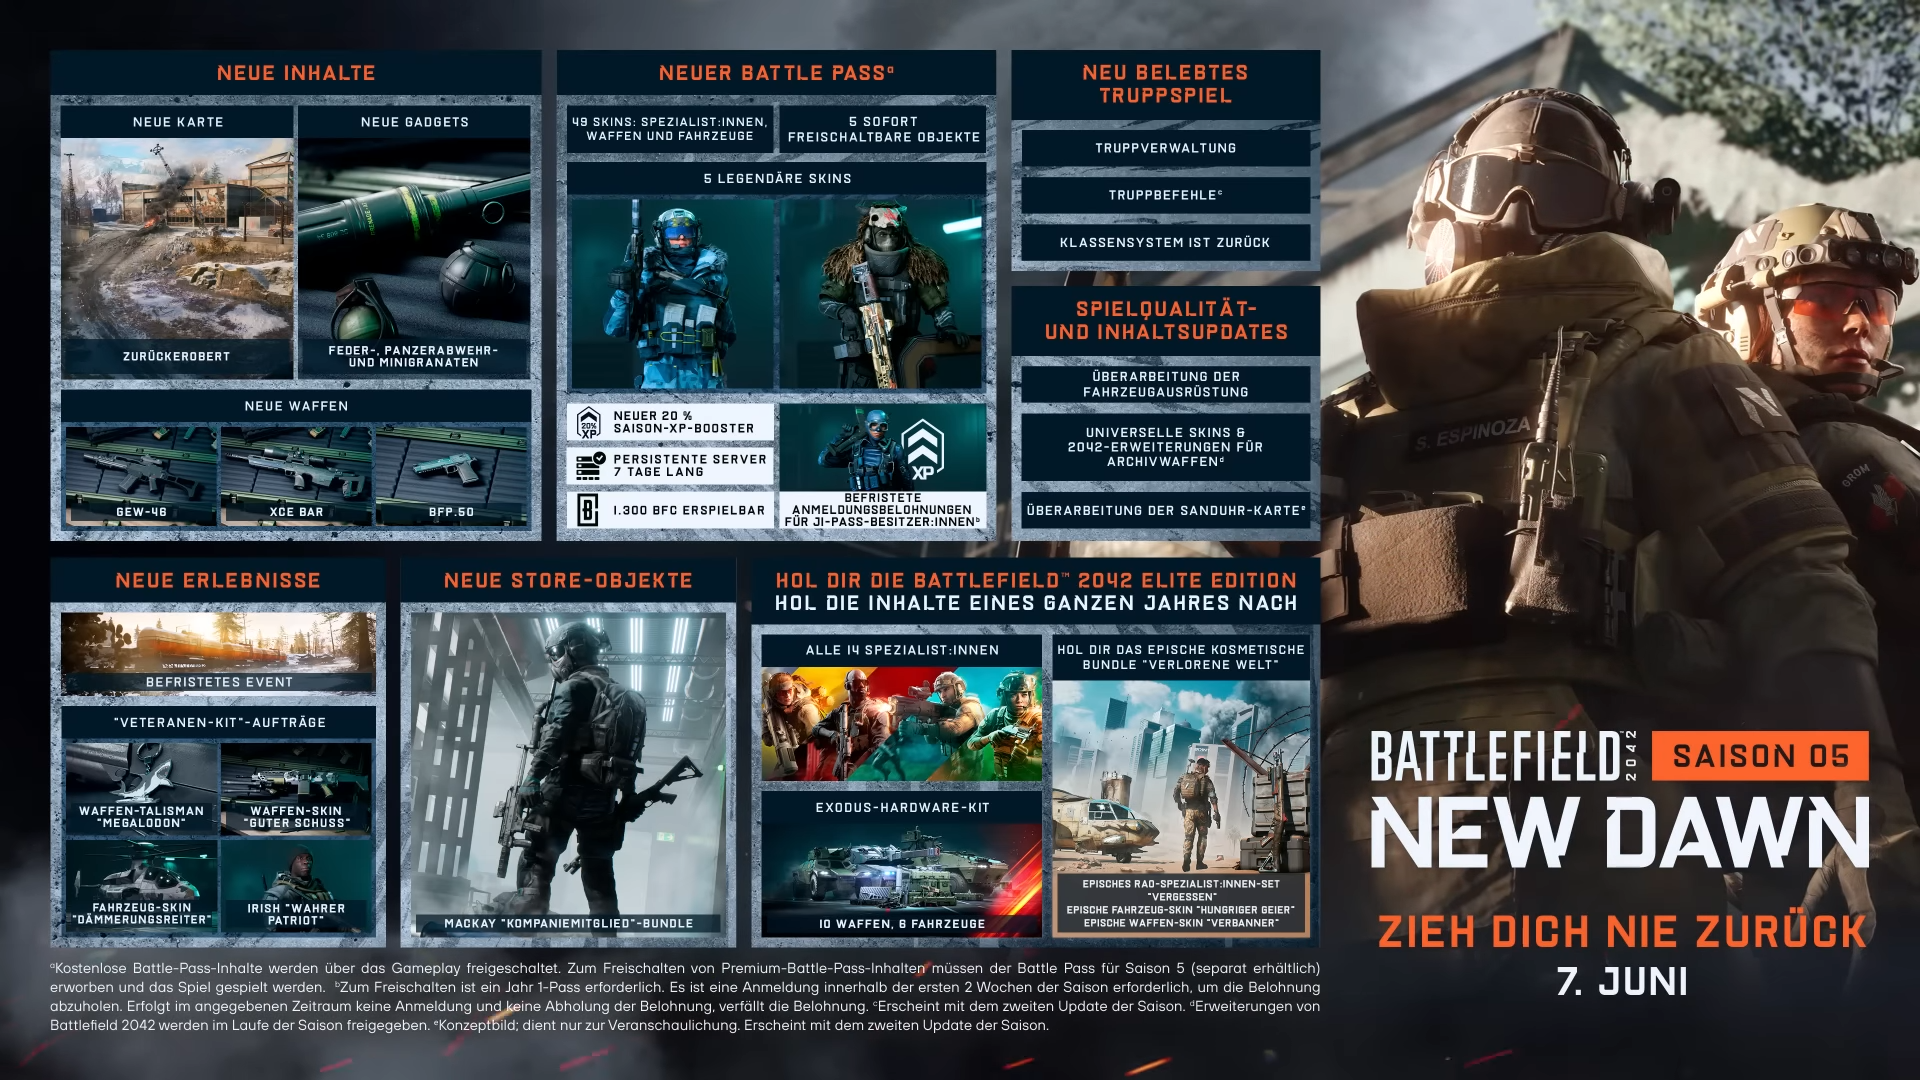 Battlefield-2042-_-Saison-5_-New-Dawn-Gameplay-Trailer-2-33-screenshot.png